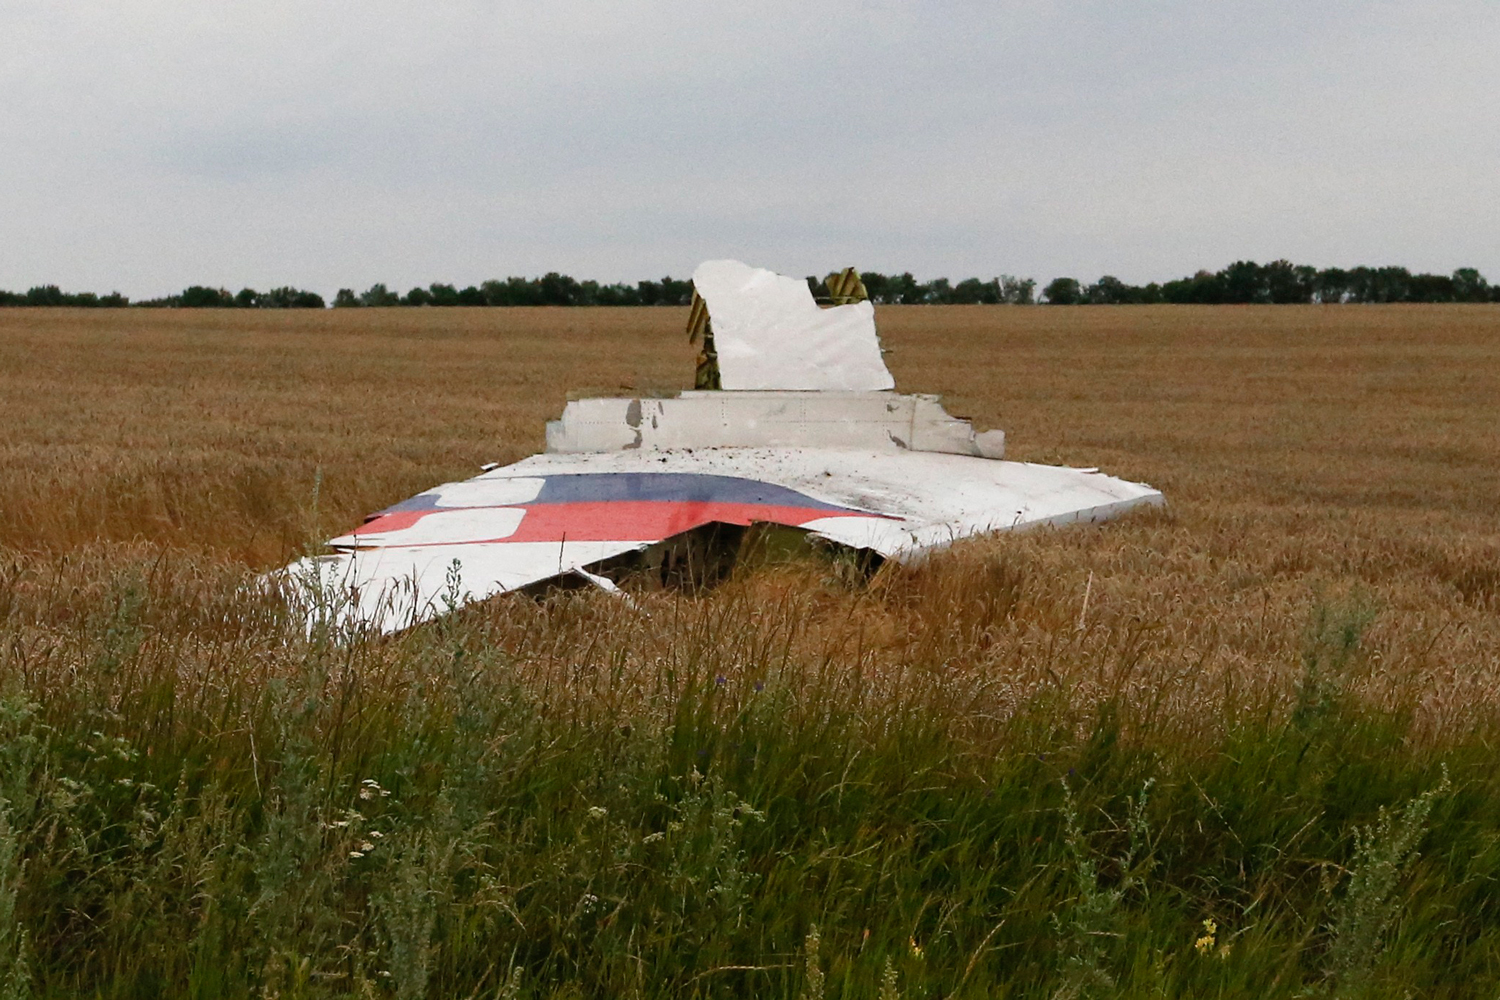 Vuelo derribado MH17, ¿operación de falsa bandera?